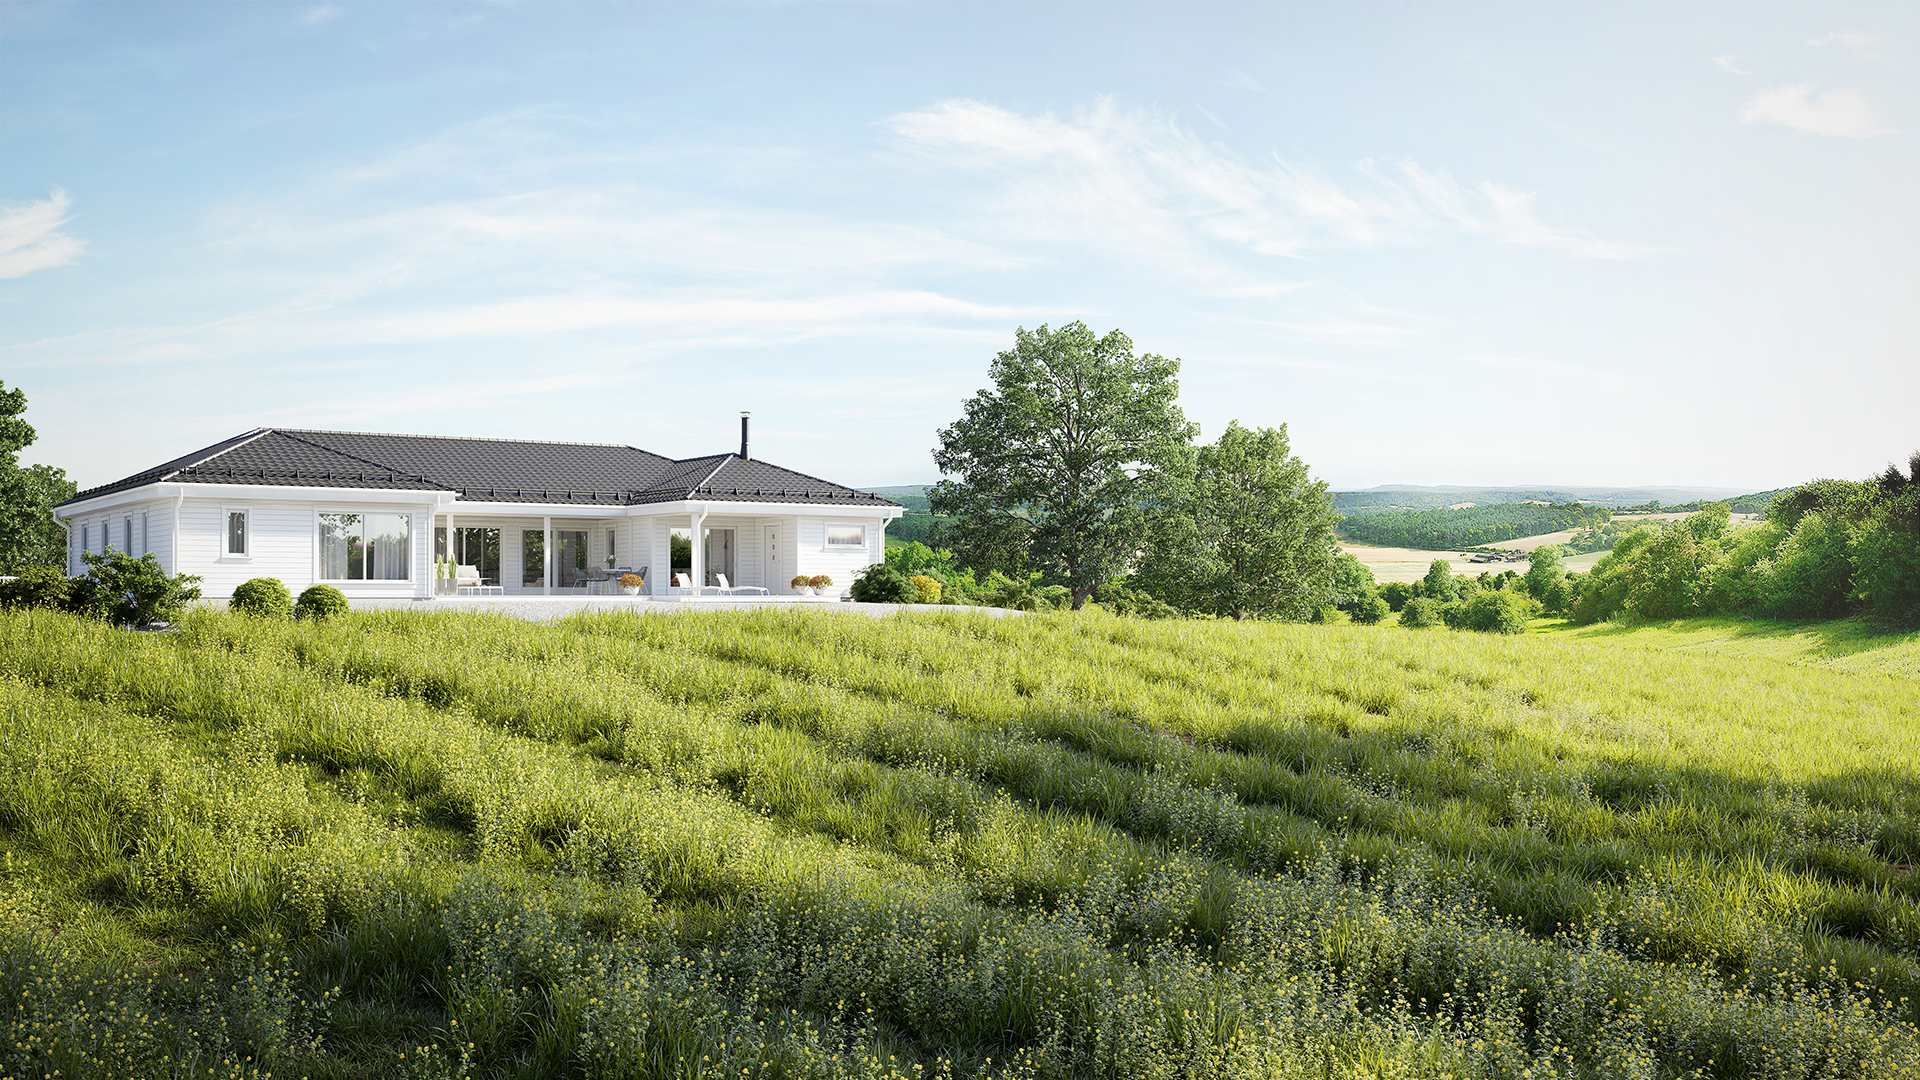 Et 3D-bilde av et hvitt hus omgitt av et grønt felt med priser.